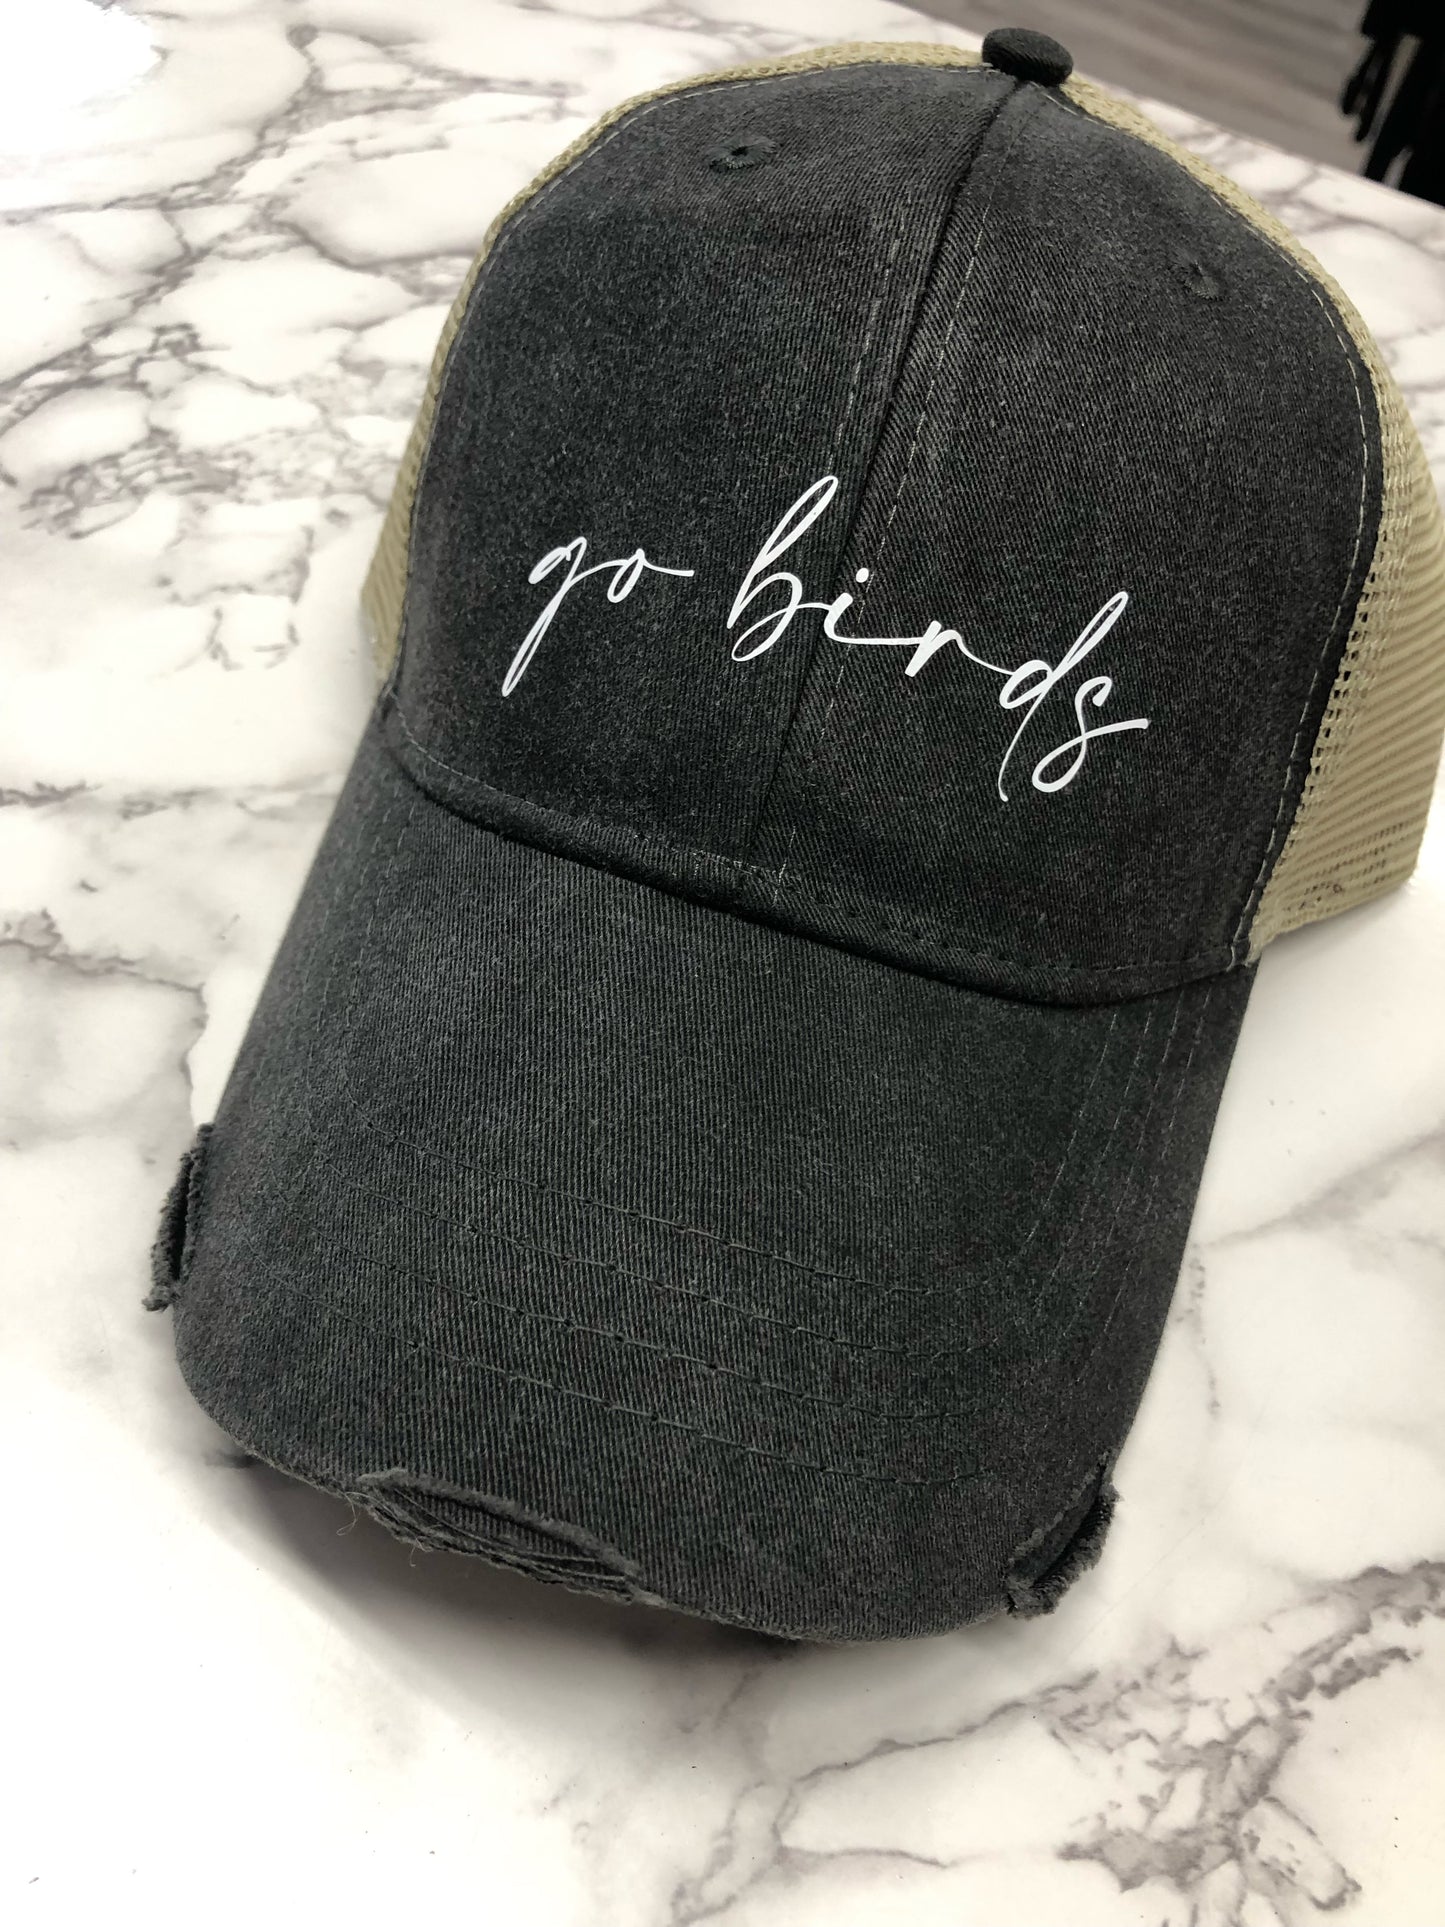 Go Birds Trucker Hat